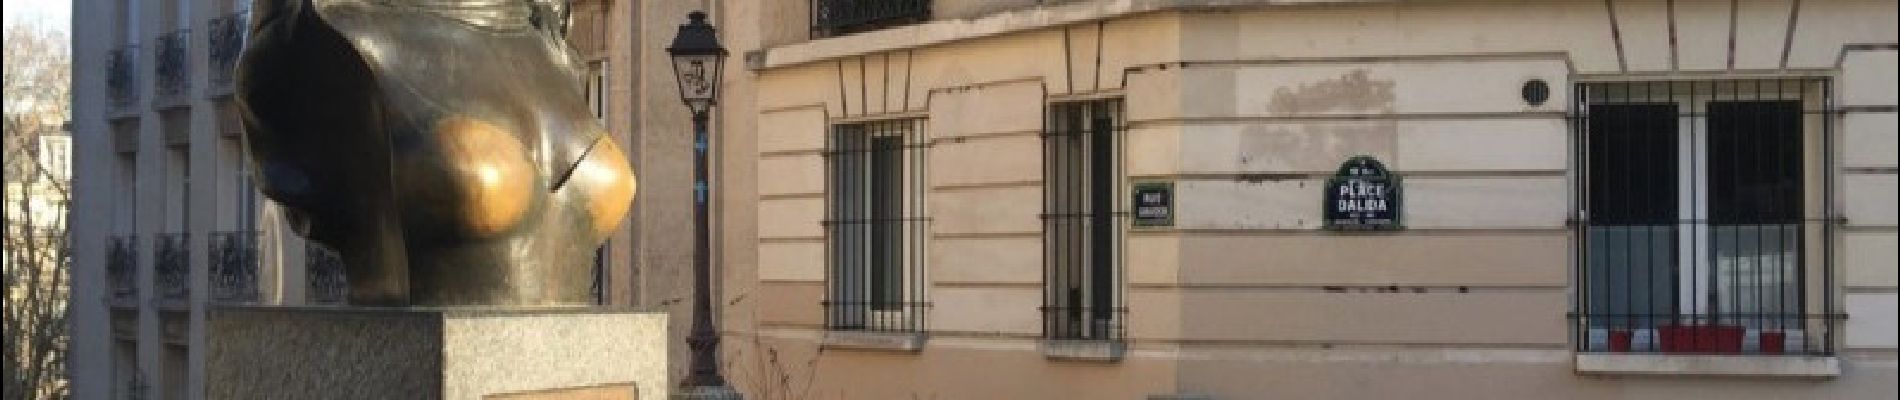 Point d'intérêt Paris - Buste de Dalida - Photo